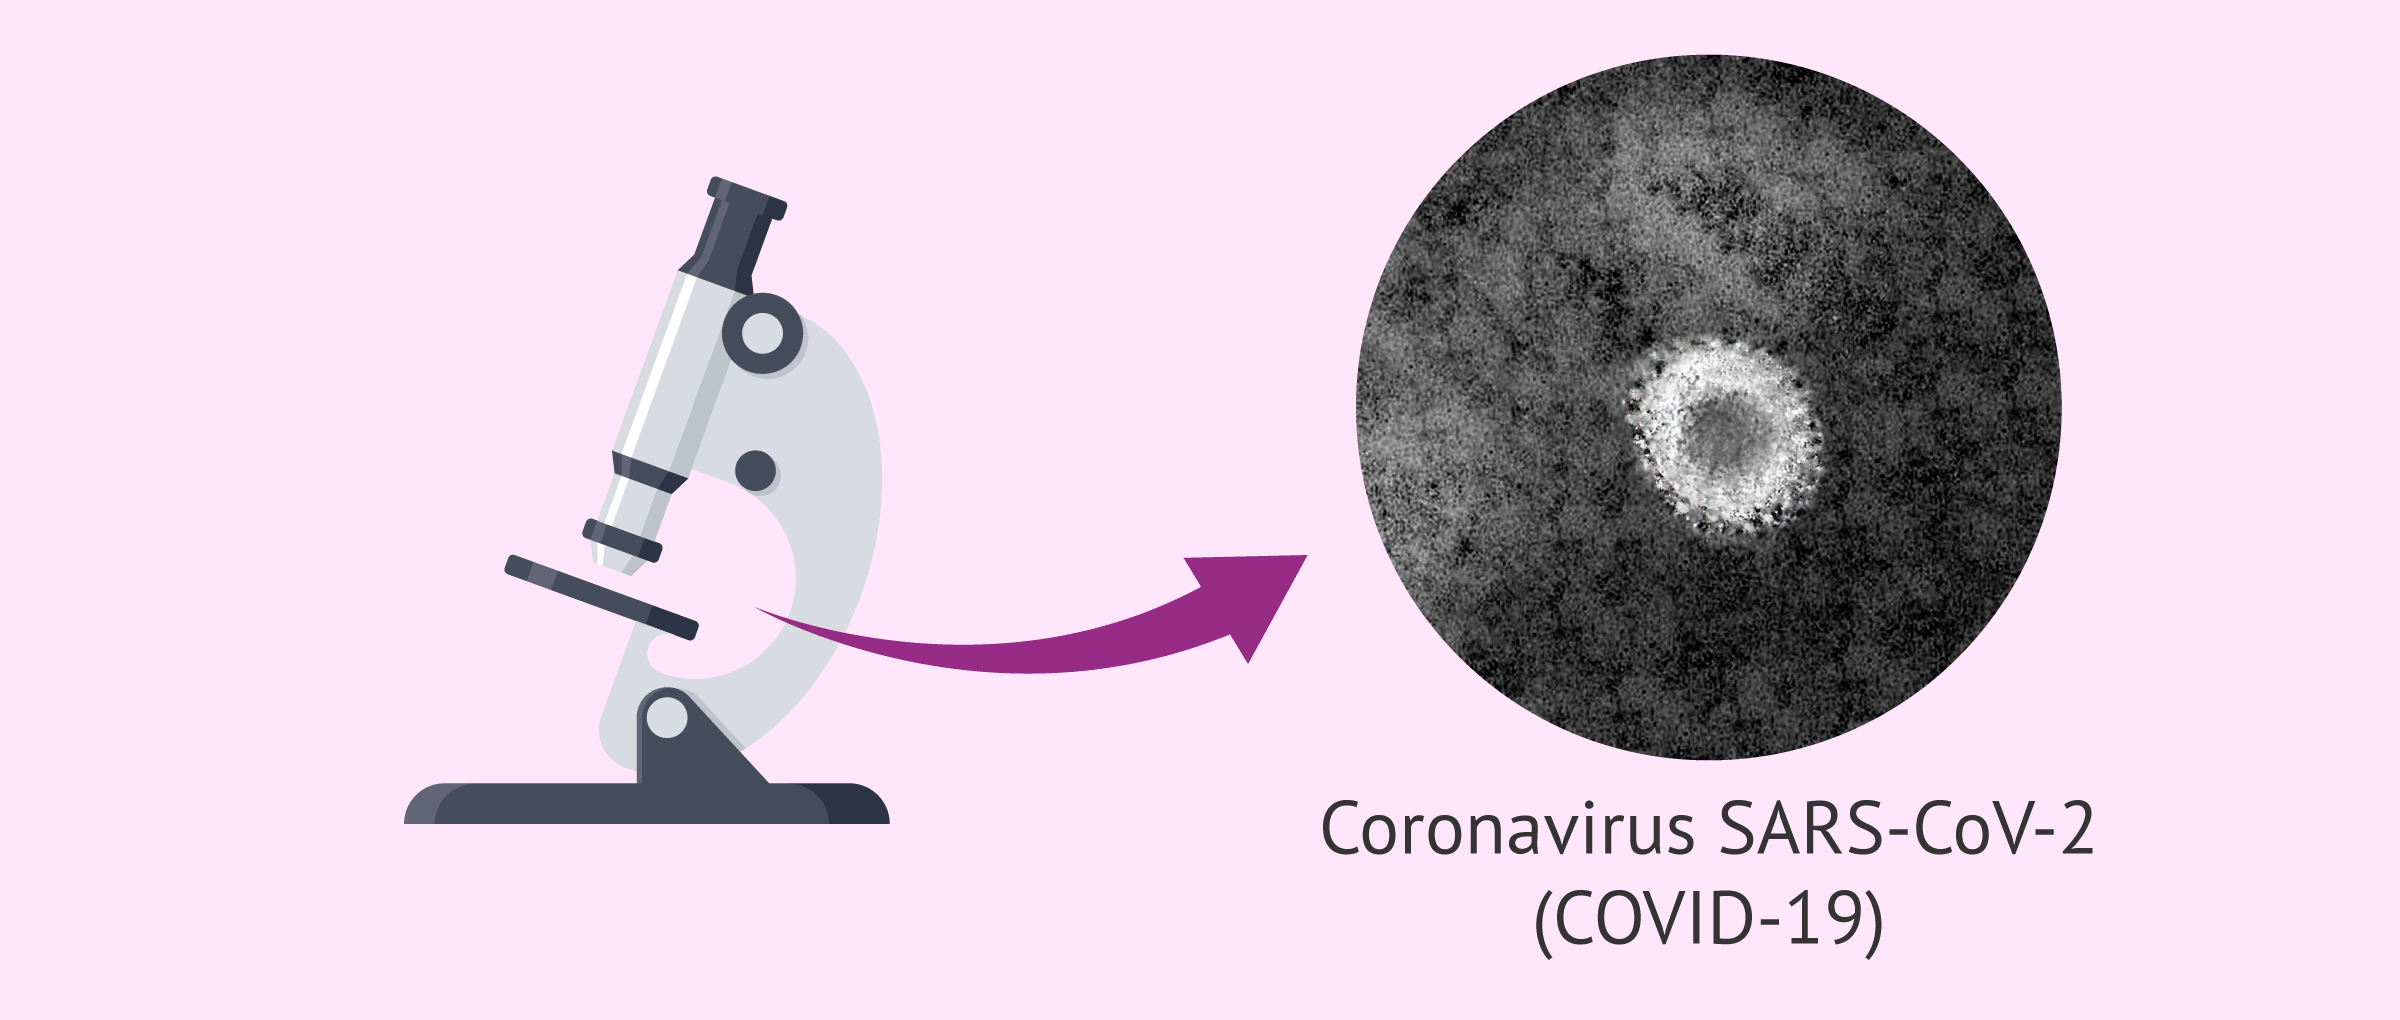 Darstellung des Coronavirus unter dem Mikroskop.